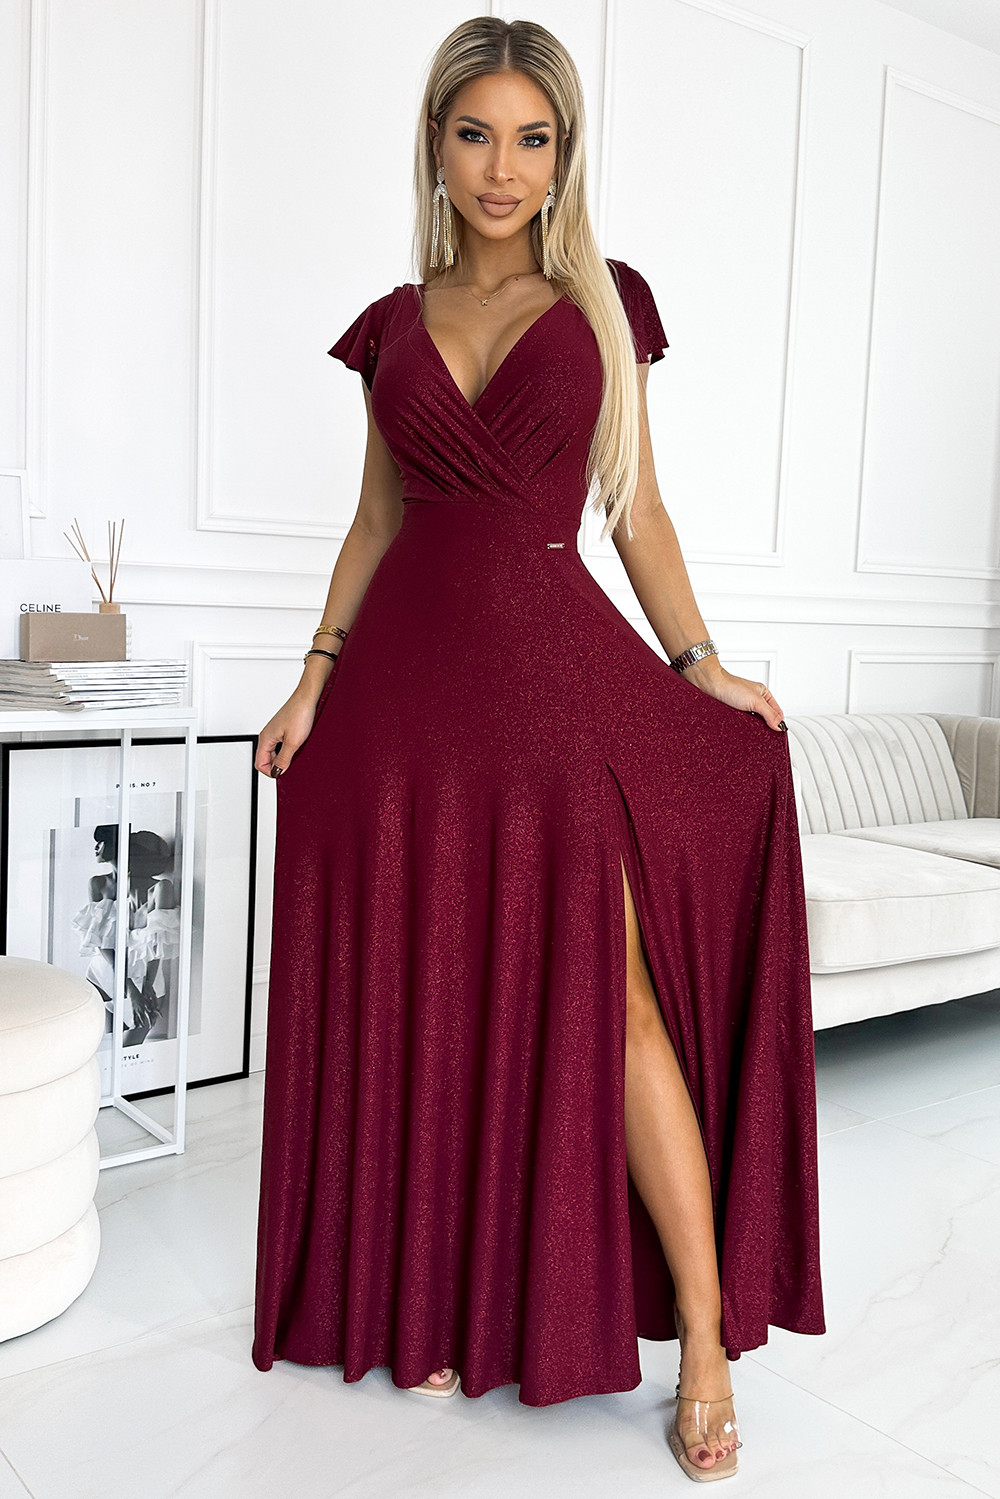 CRYSTAL - Dlouhé lesklé dámské šaty ve vínové bordó barvě s výstřihem 411-8 XS